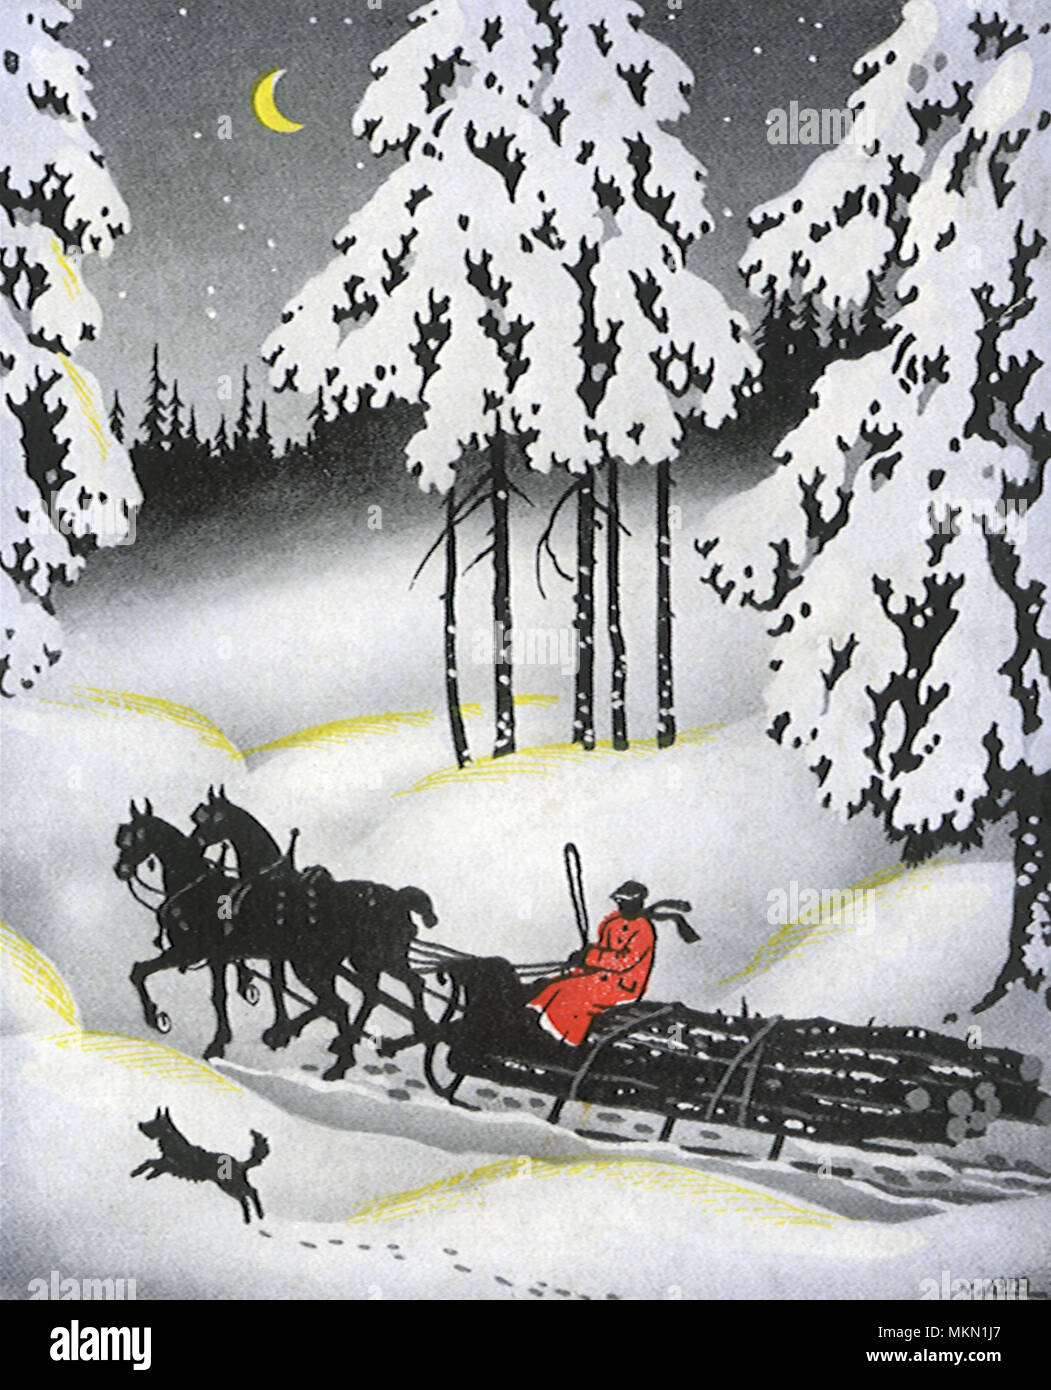 Иллюстрация к стихотворению зимняя дорога Пушкина